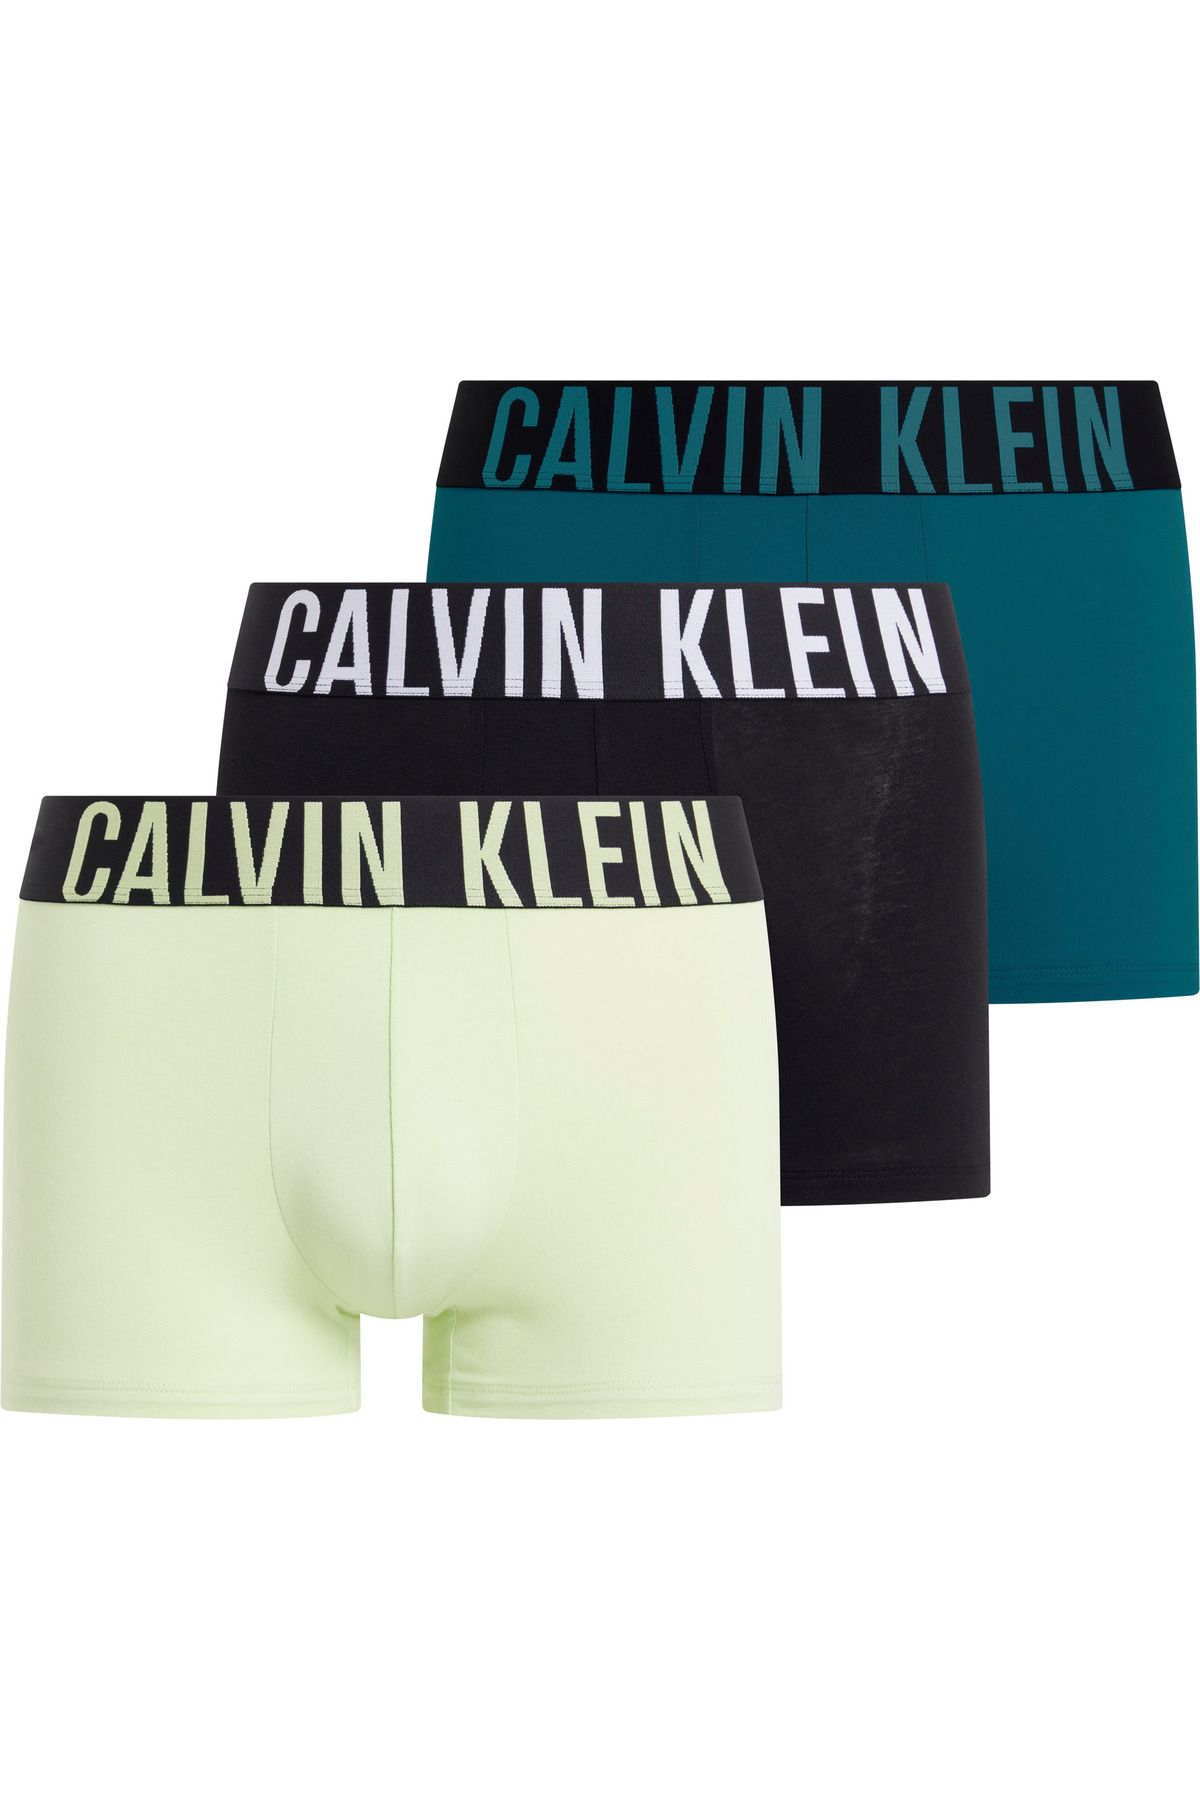 Calvin Klein Erkek Marka Logolu Elastik Bantlı Günlük Kullanıma Uygun Yeşil-siyah-turkuaz Boxer 000nb3608a-og5